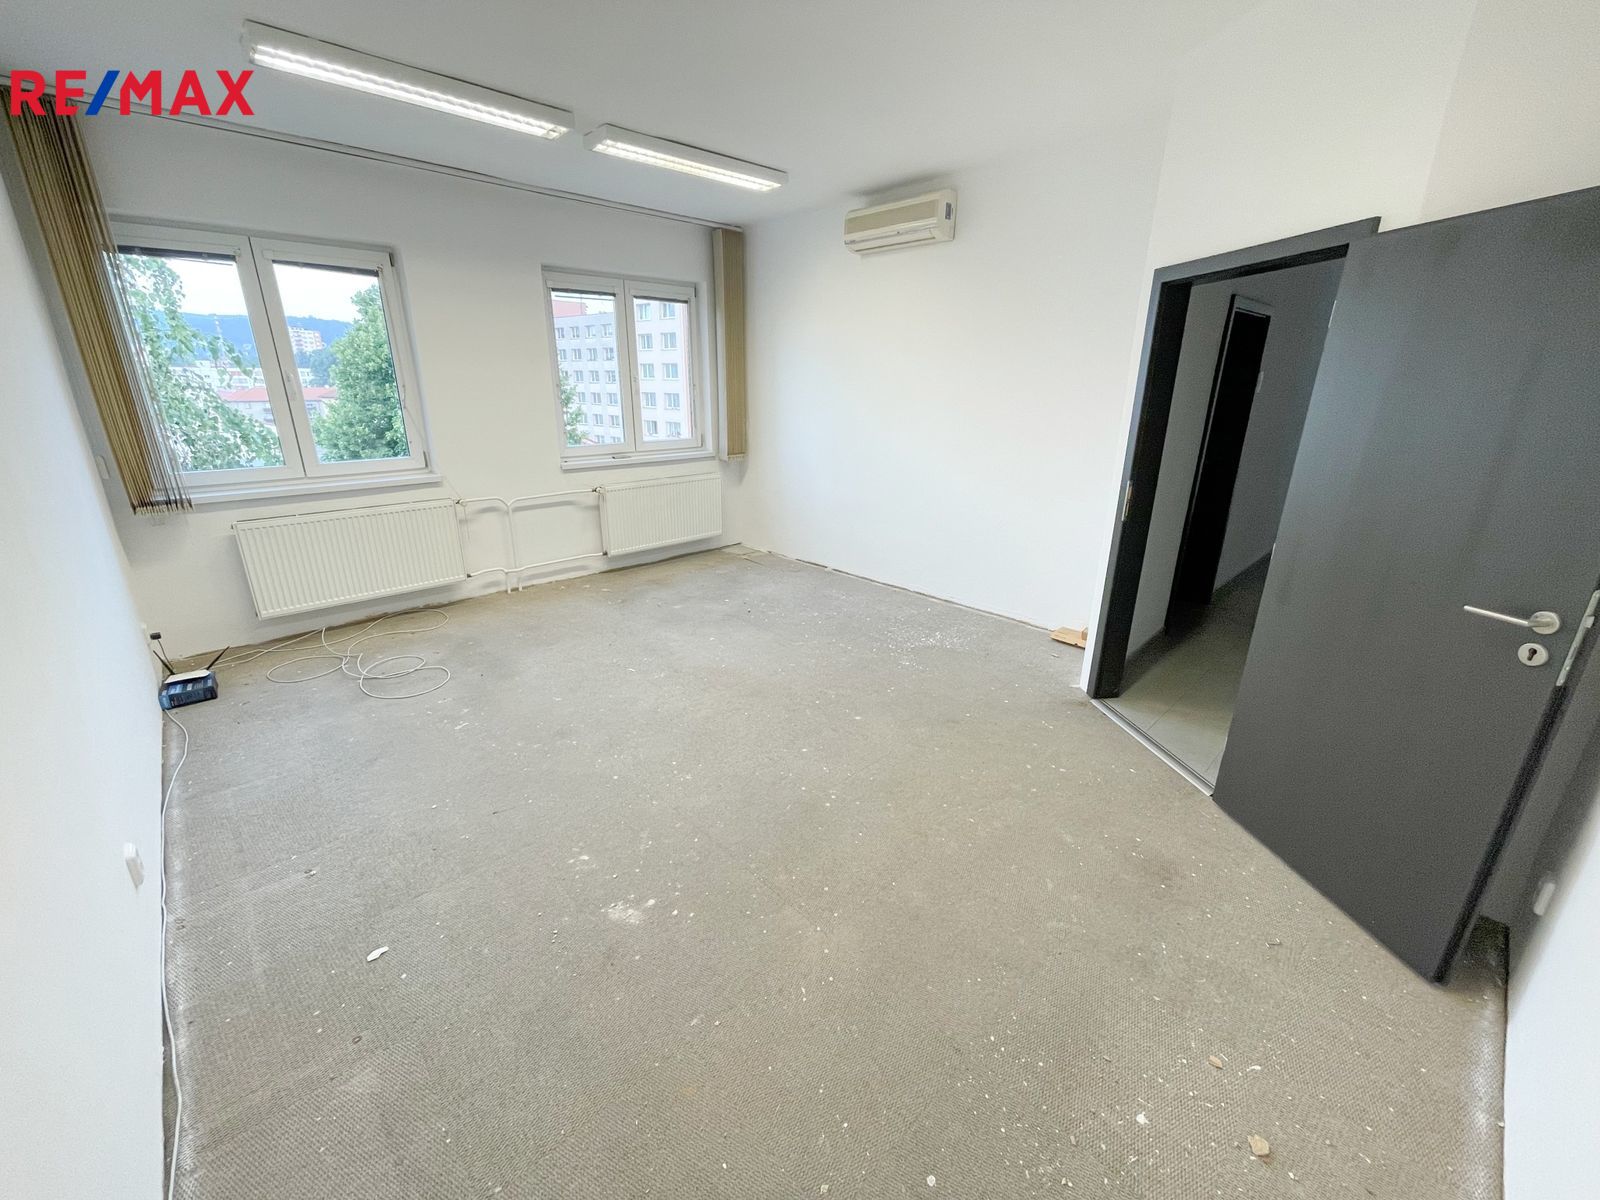 Interiér kanceláře - bude nový koberec a vymalován